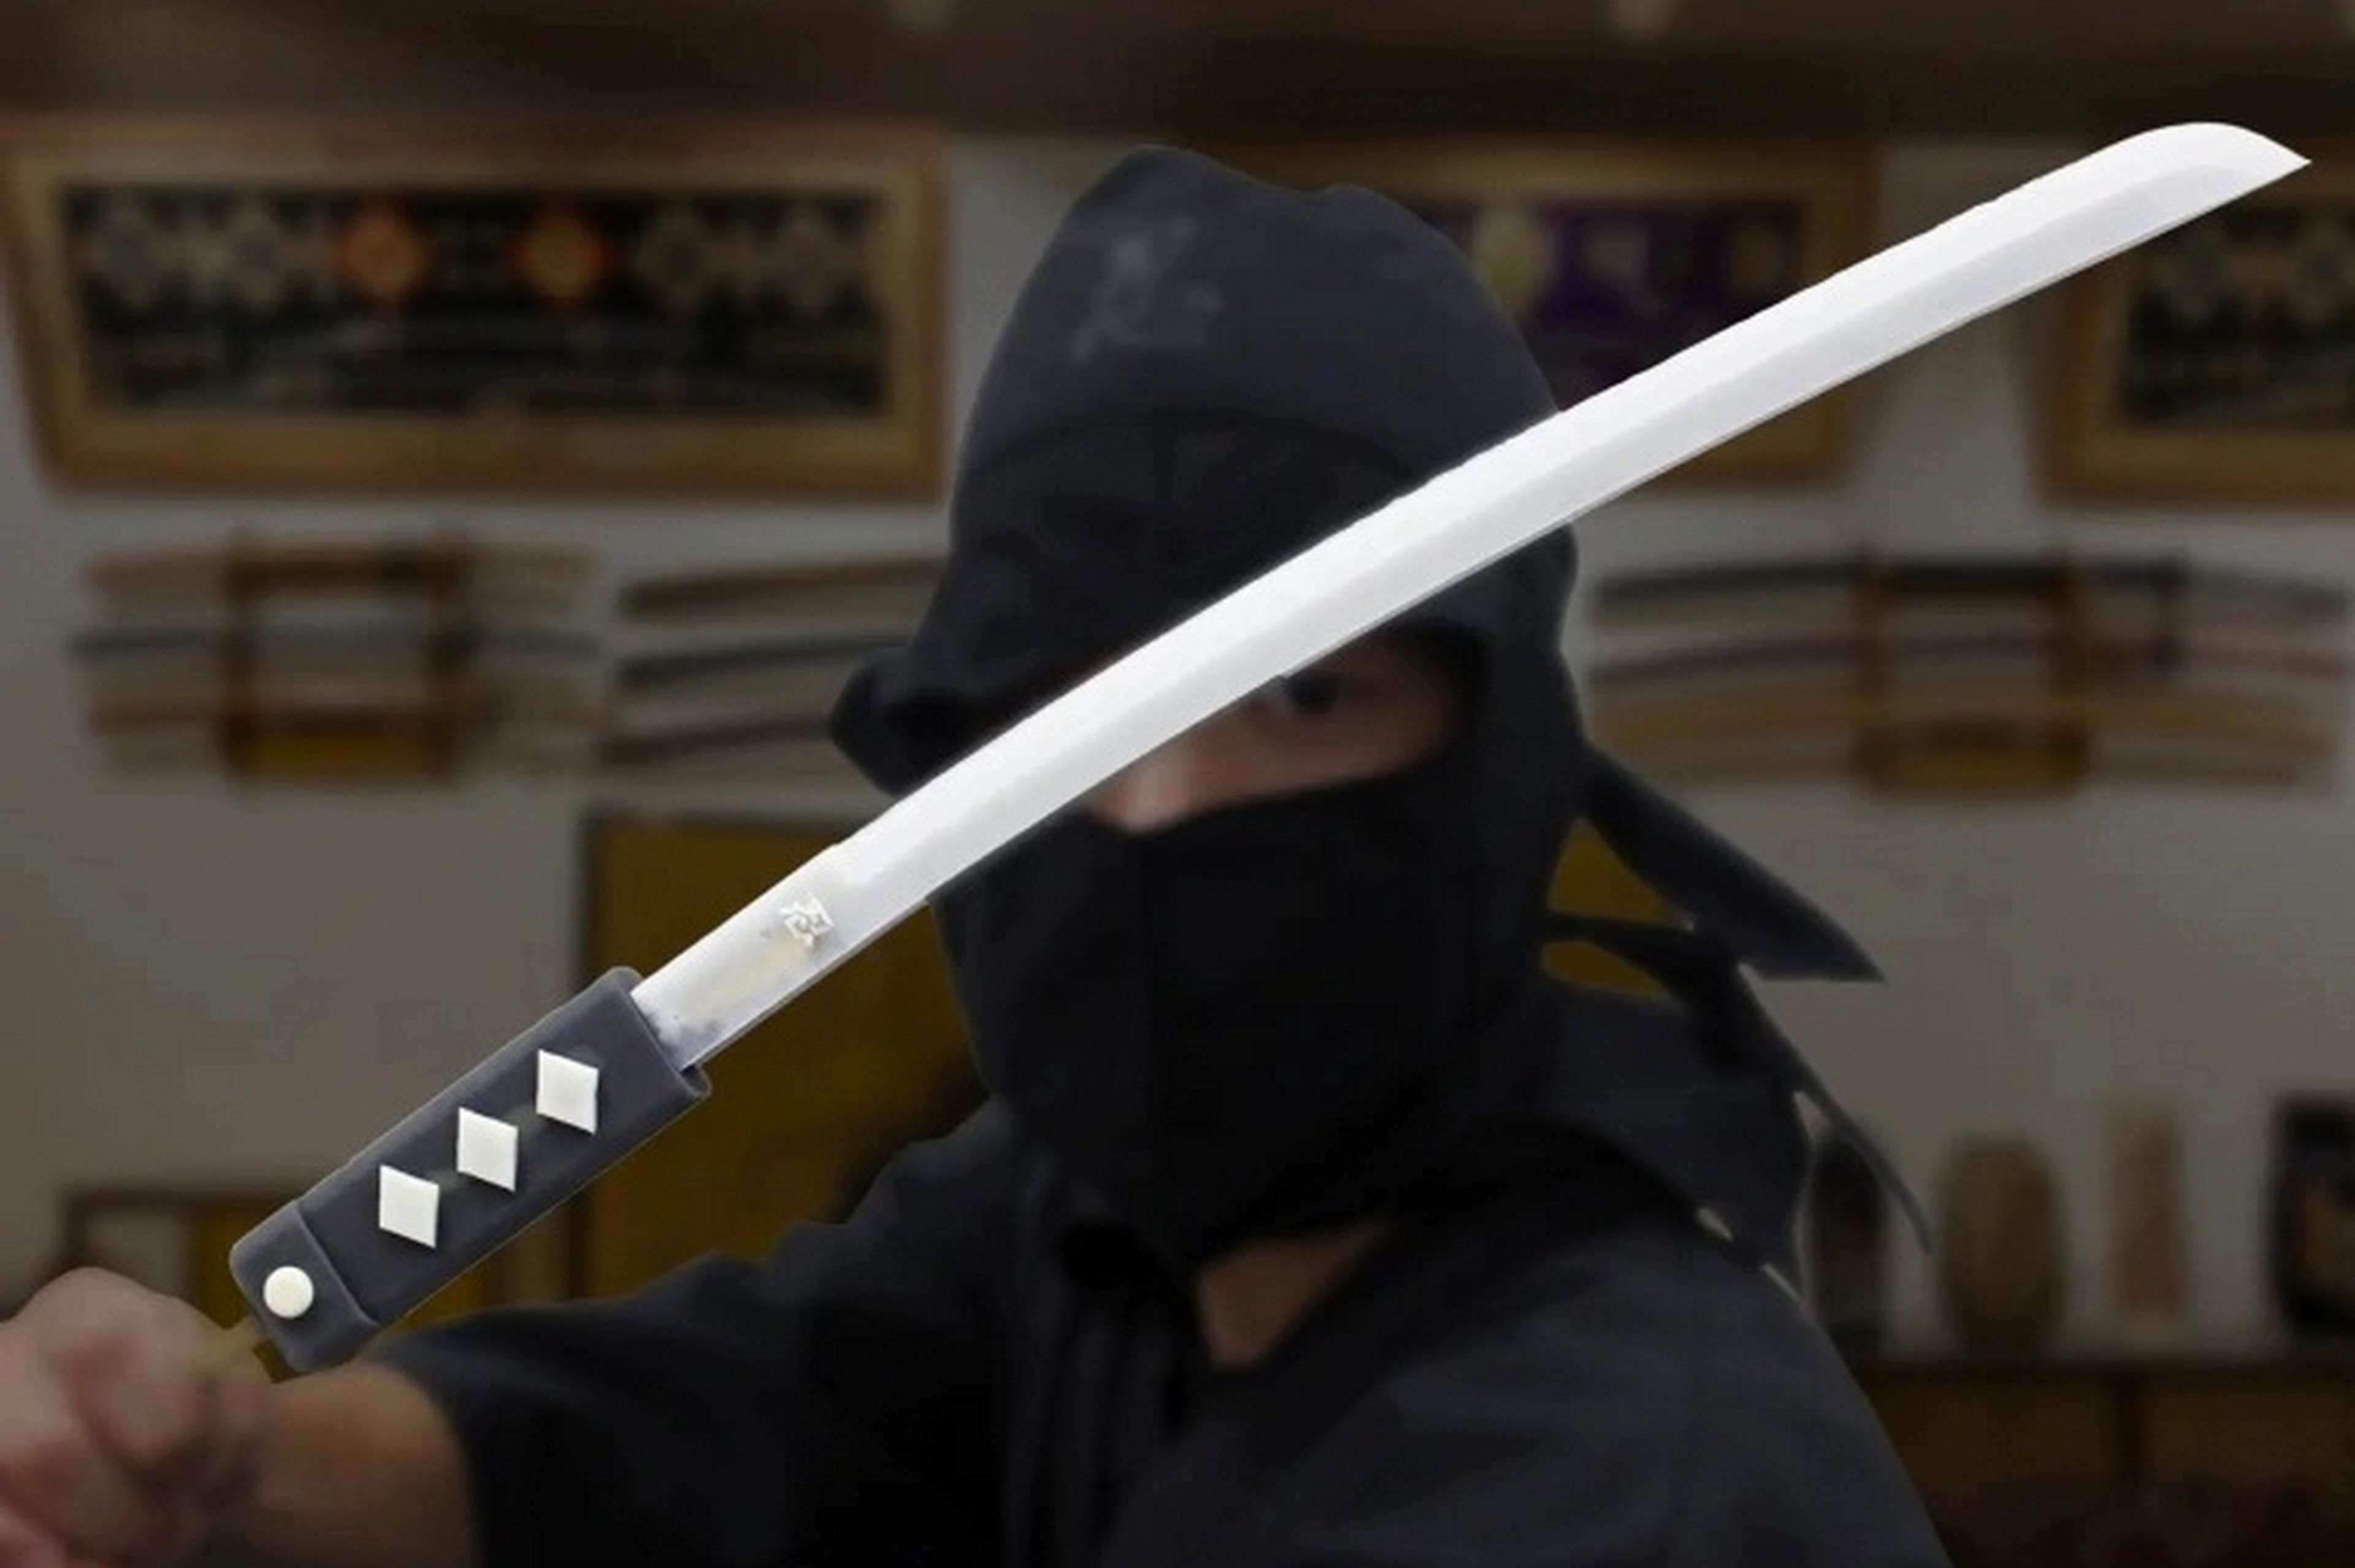 El helado más largo del mundo mide 45 centímetros y es... una espada ninja